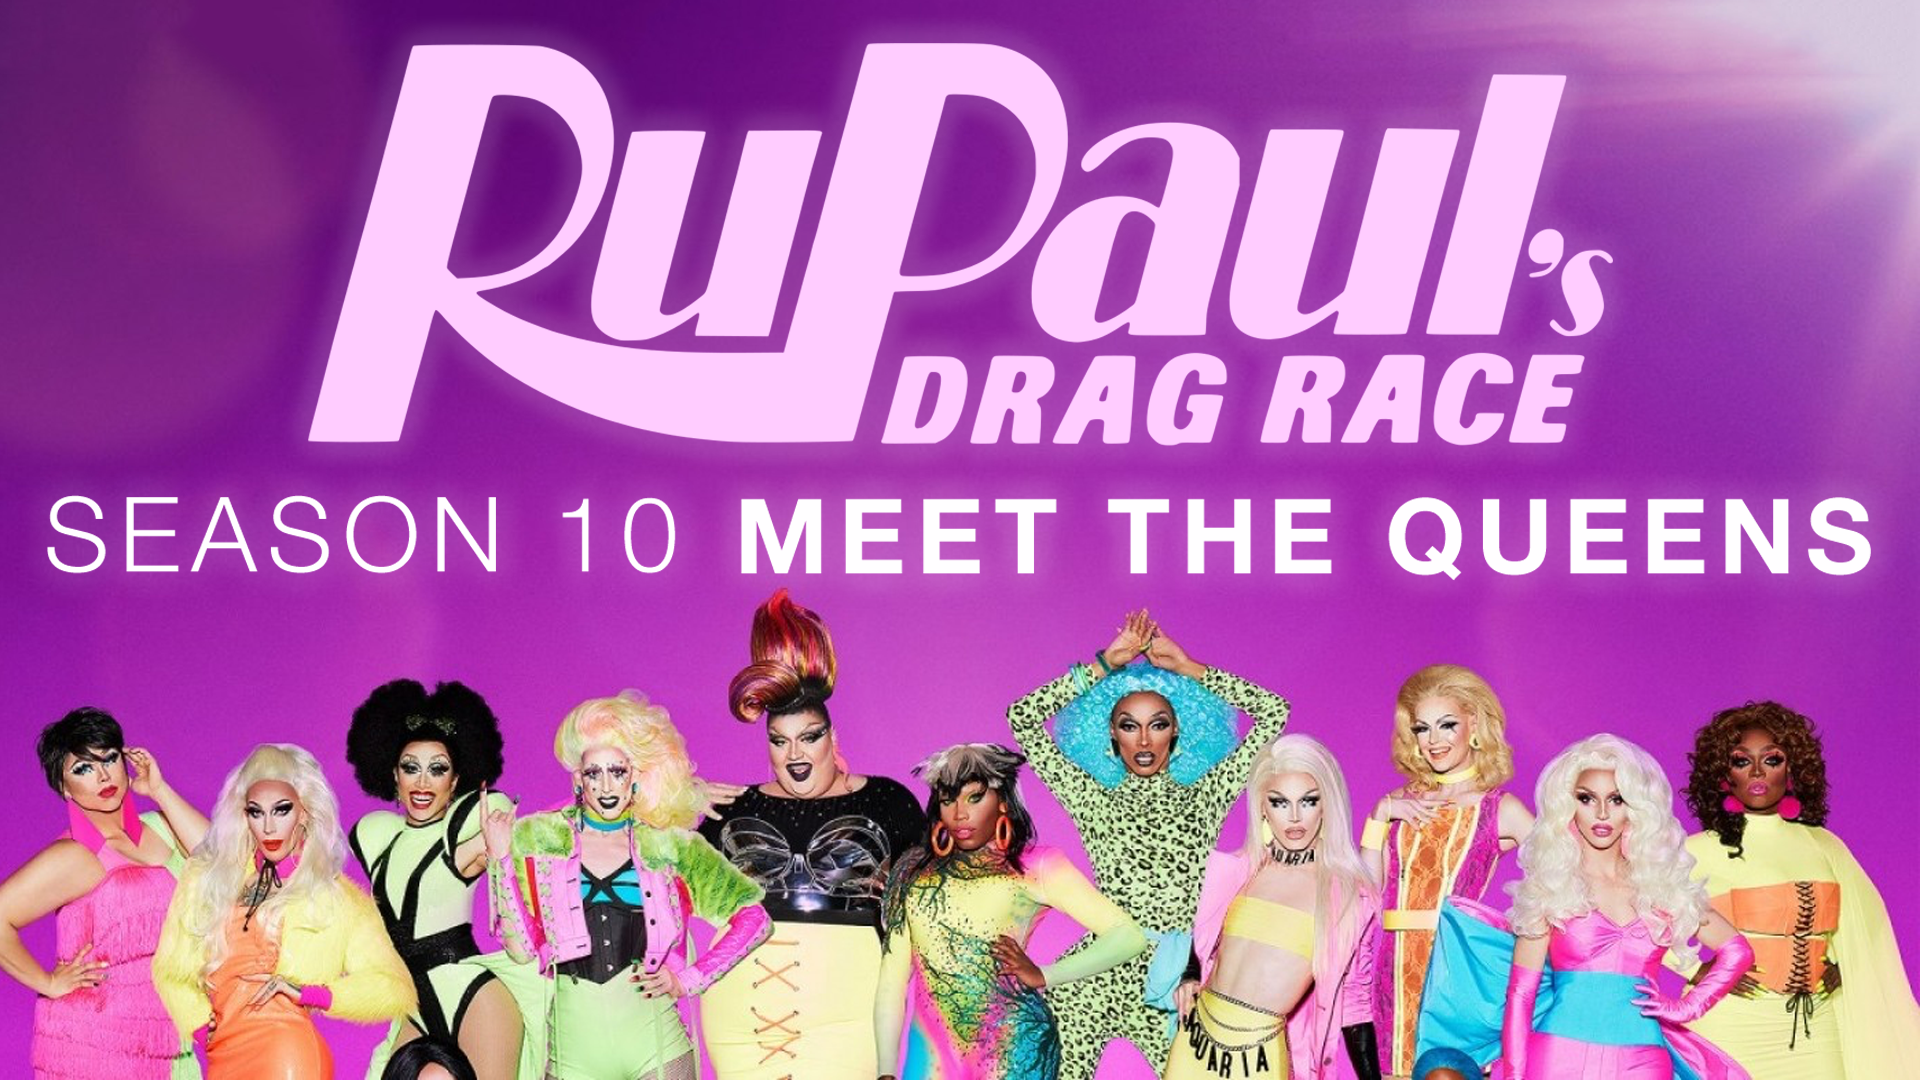 Search RuPaul's Drag Race Season 2